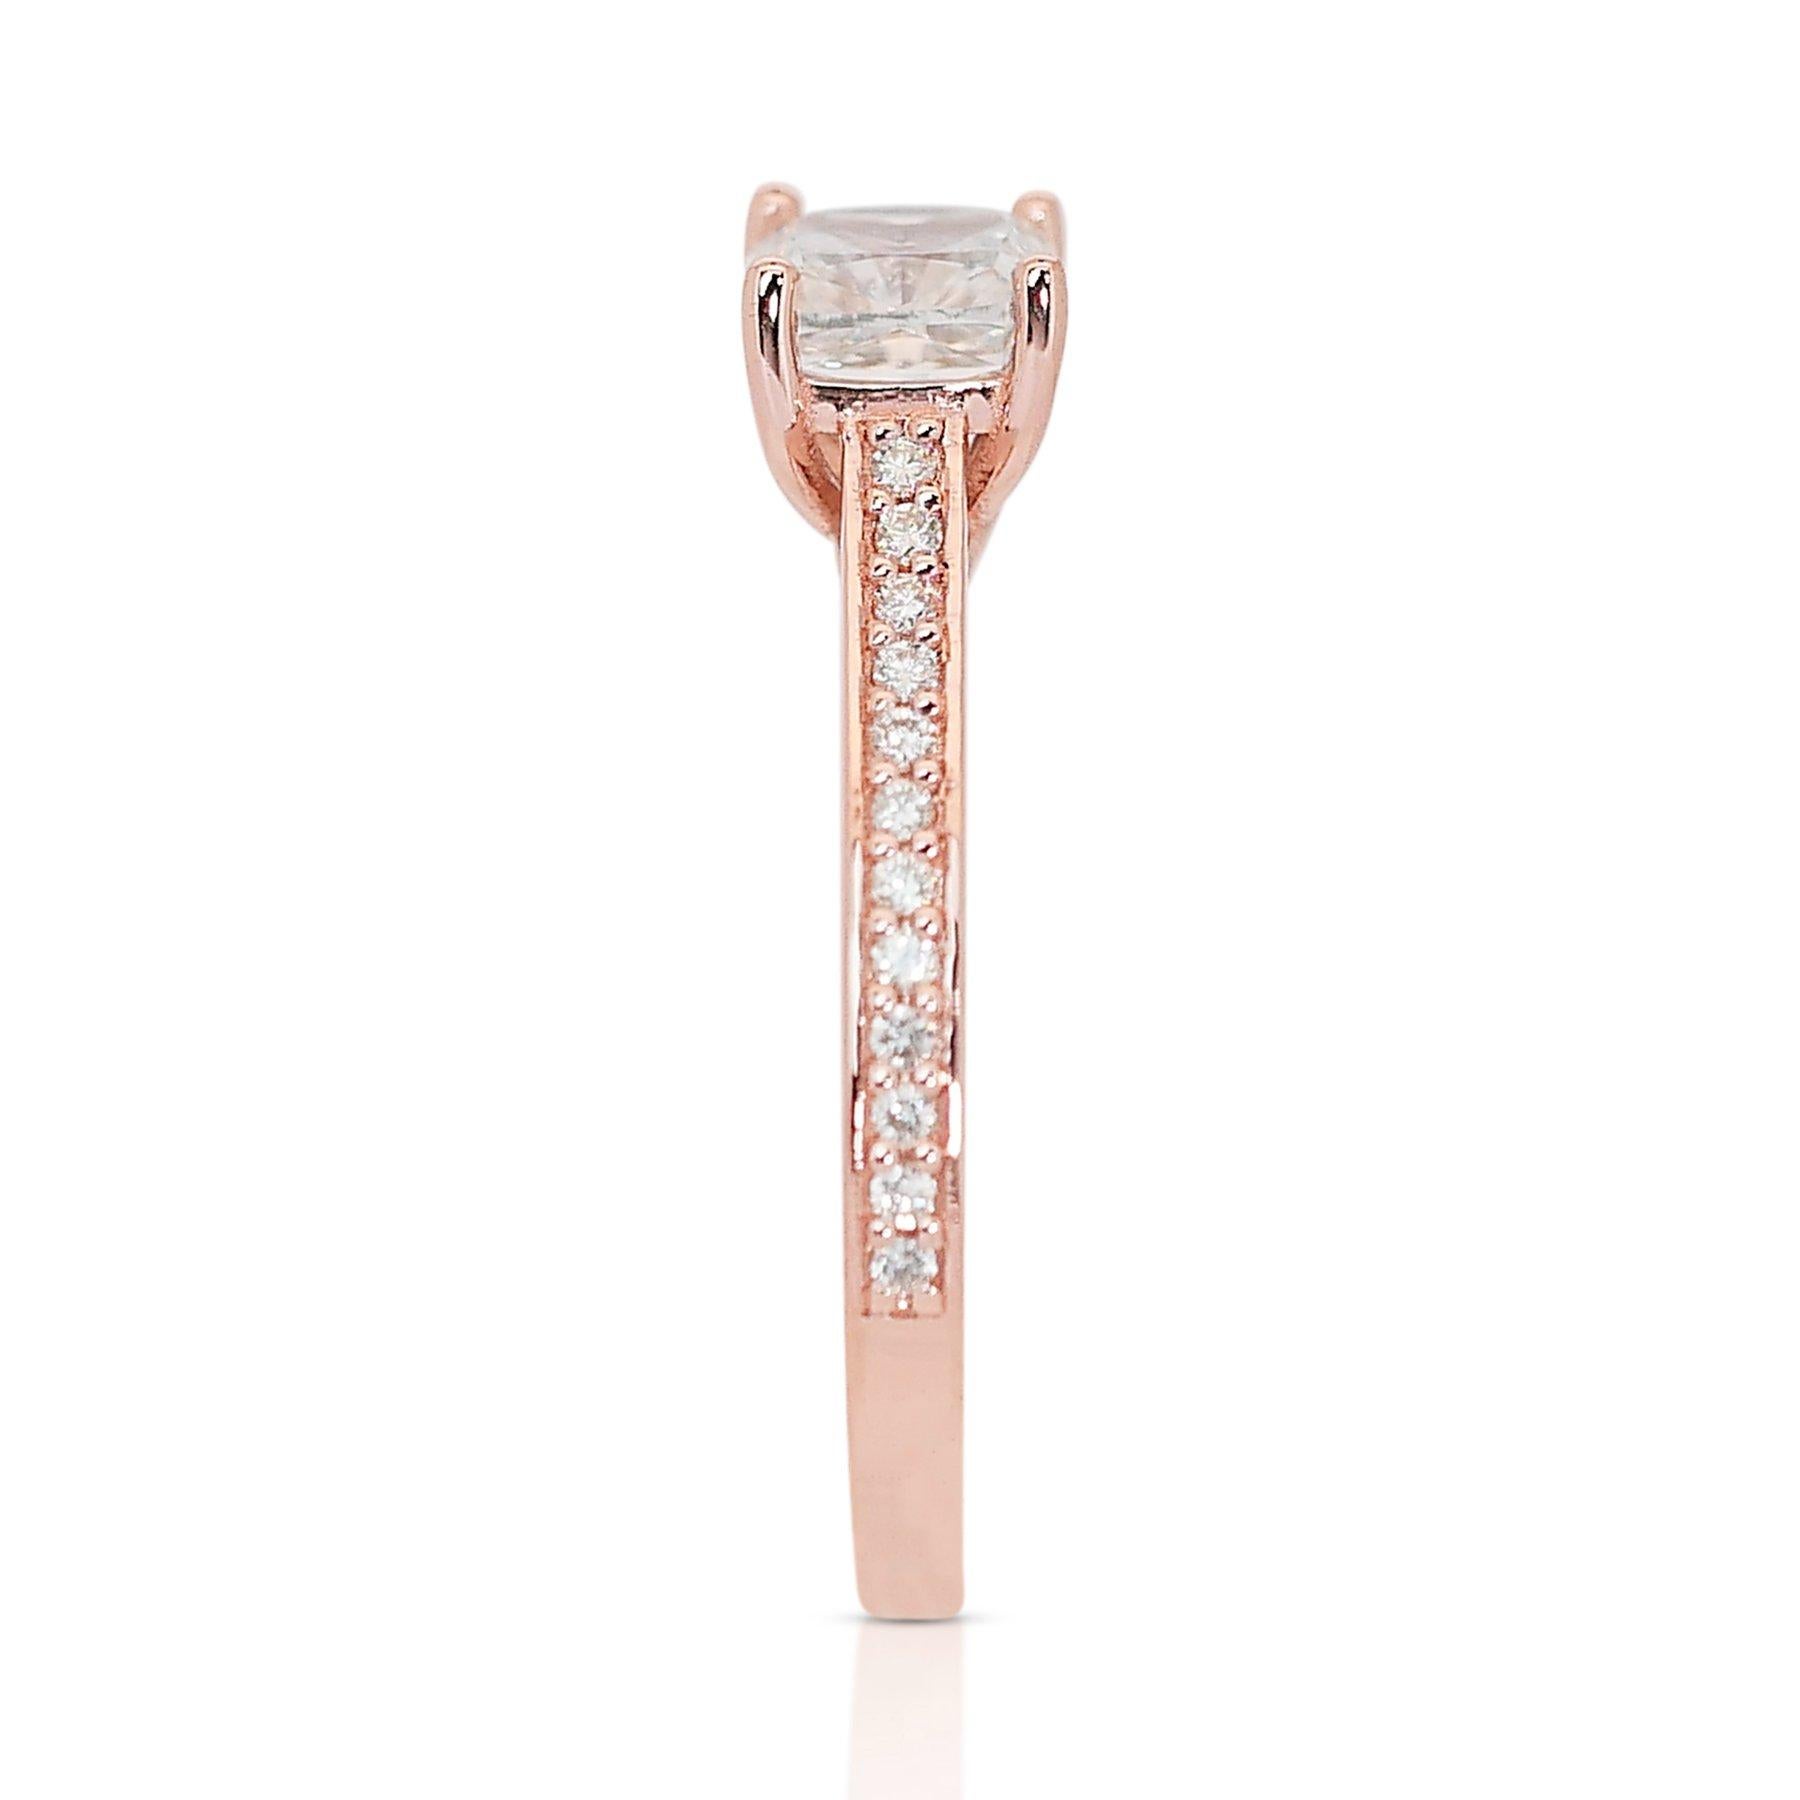 Radiant 1,17ct Diamant Pave Ring in 18k Rose Gold - GIA zertifiziert

Erleben Sie die Anziehungskraft schlichter Eleganz mit diesem raffinierten Ring aus 18 Karat Roségold, der einen bemerkenswerten Hauptdiamanten im Kissenschliff von 1,00 Karat zur